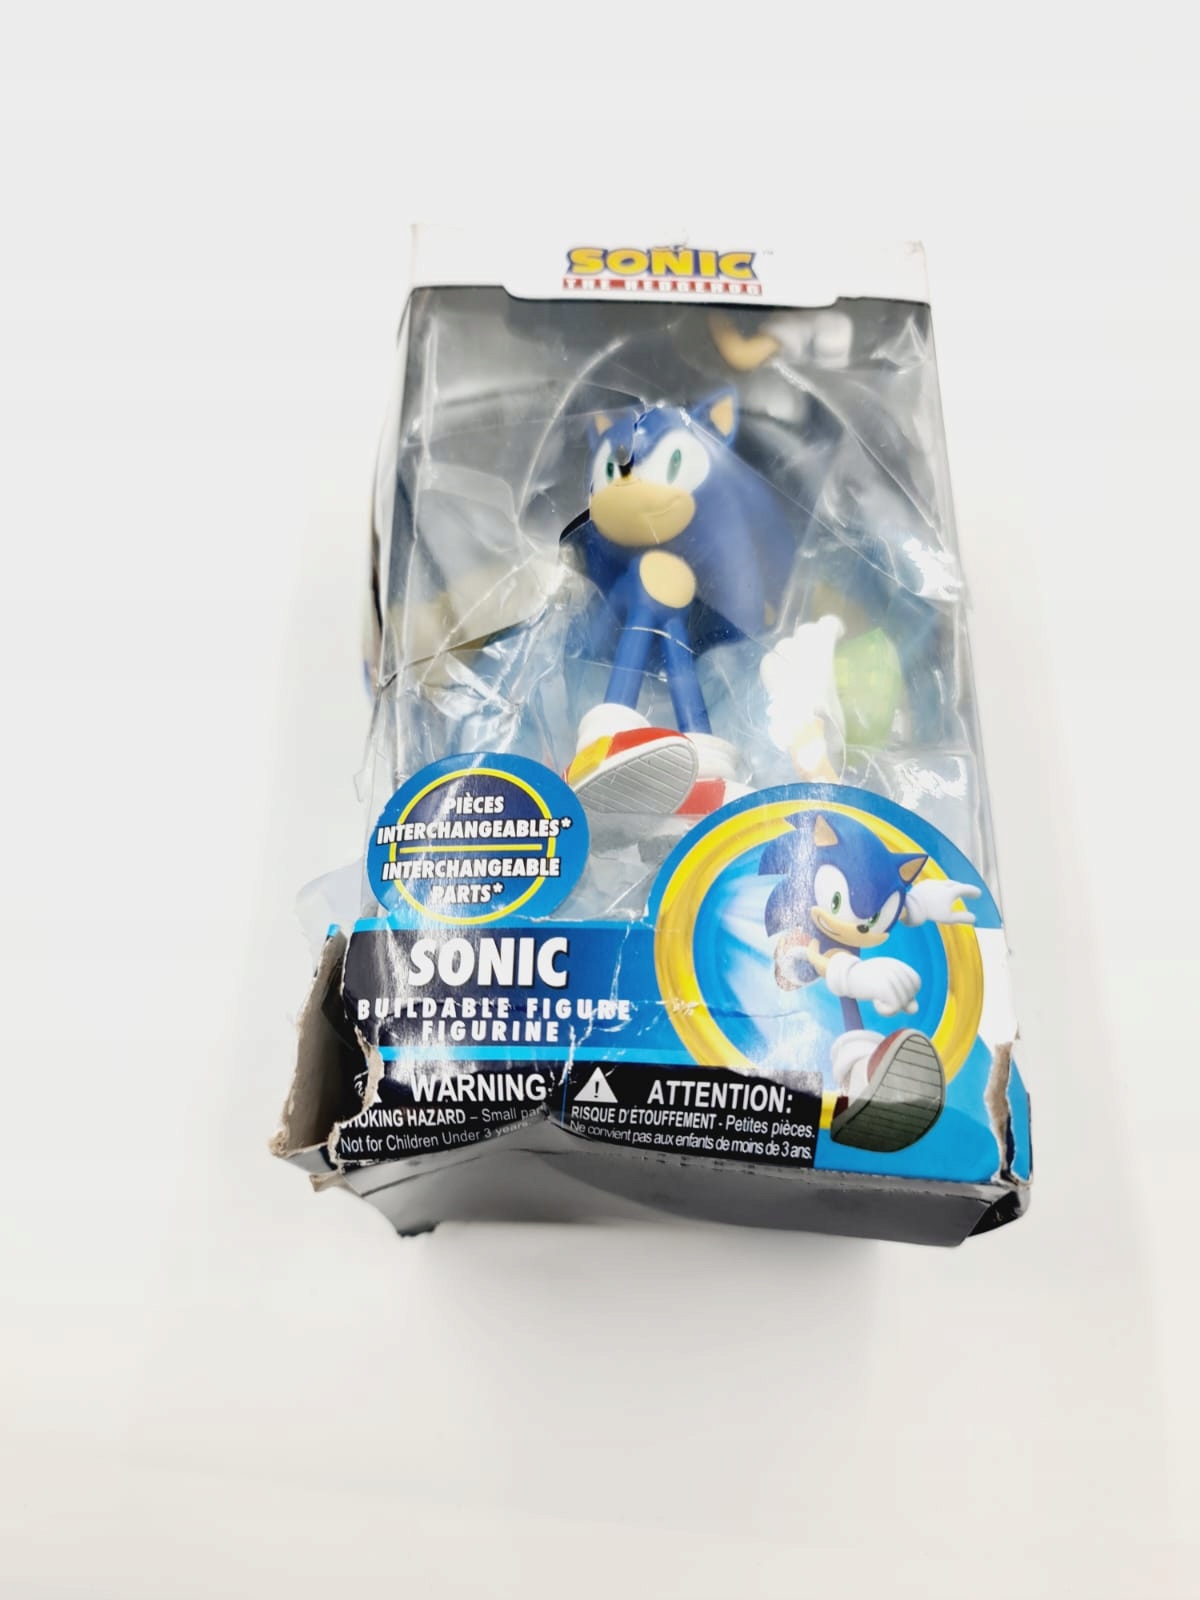 Boneco Sonic the Hedgehog - Sonic 10 cm Just Toys - Bonecos - Magazine Luiza